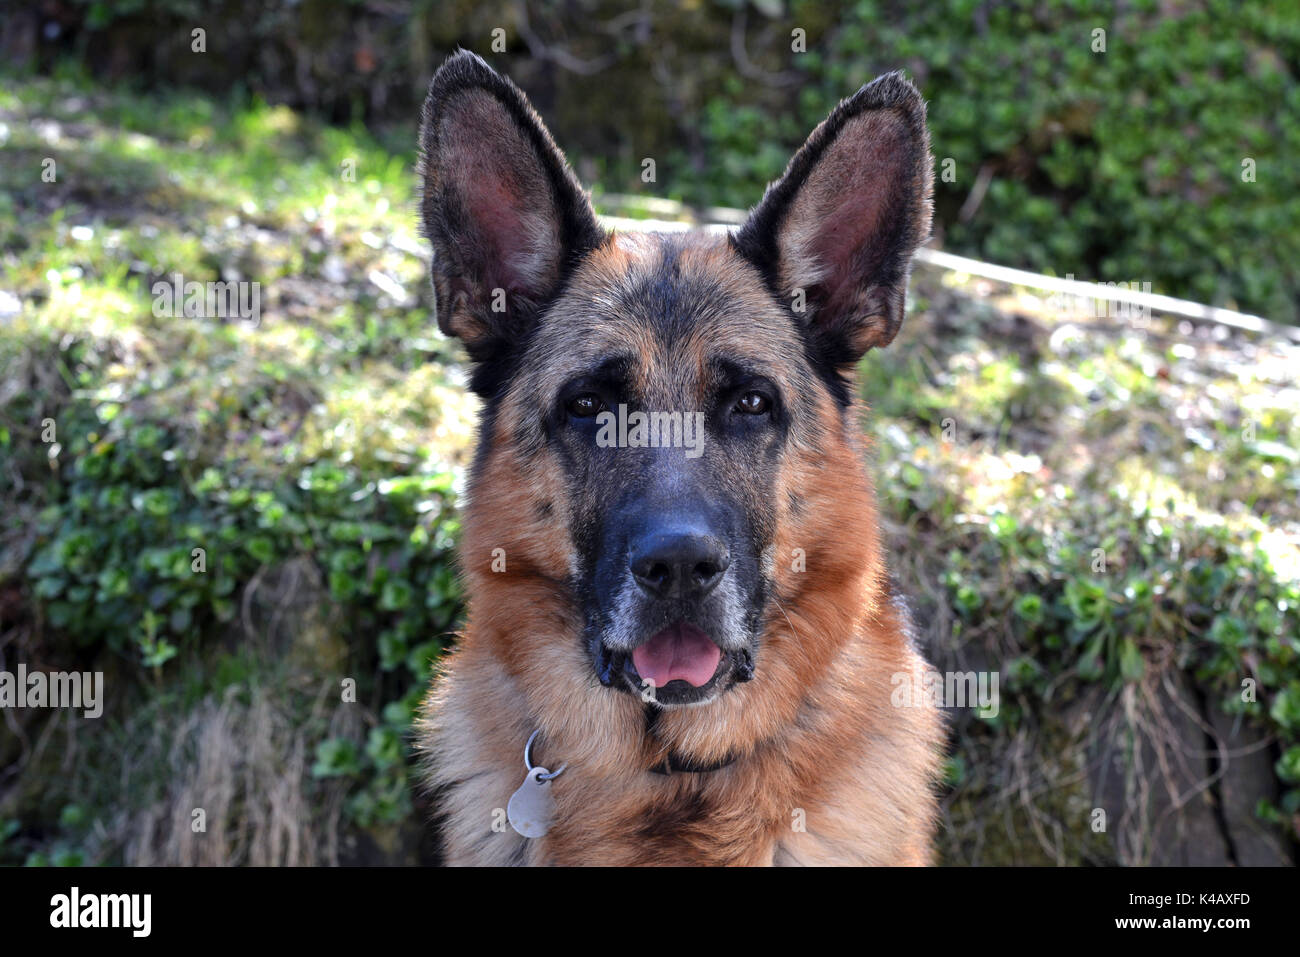 Trace animal chien Banque d'images détourées - Page 2 - Alamy